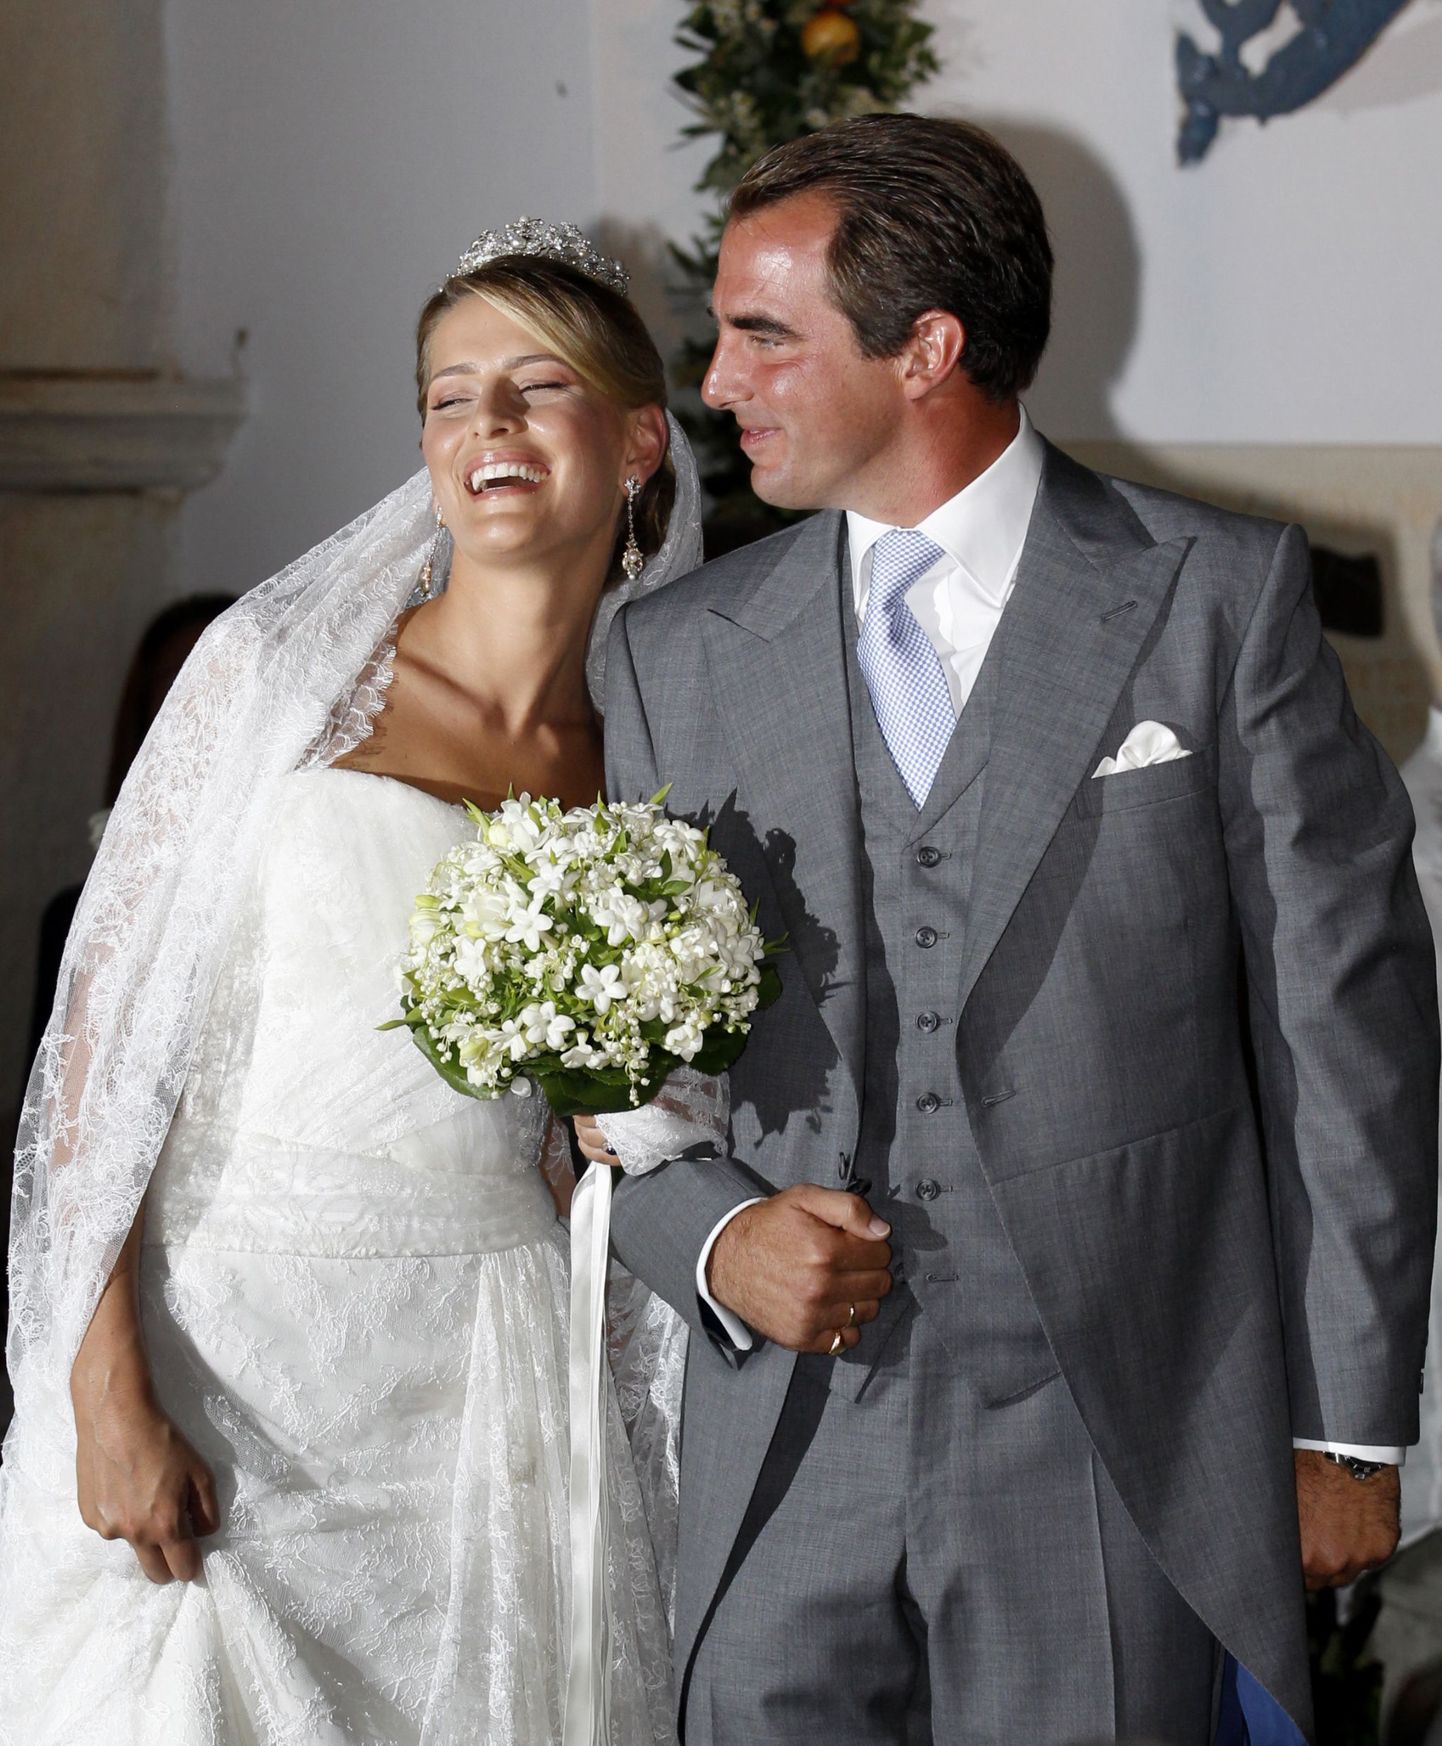 Kreeka prints Nikolaos ja ta abikaasa Tatiana Blatnik